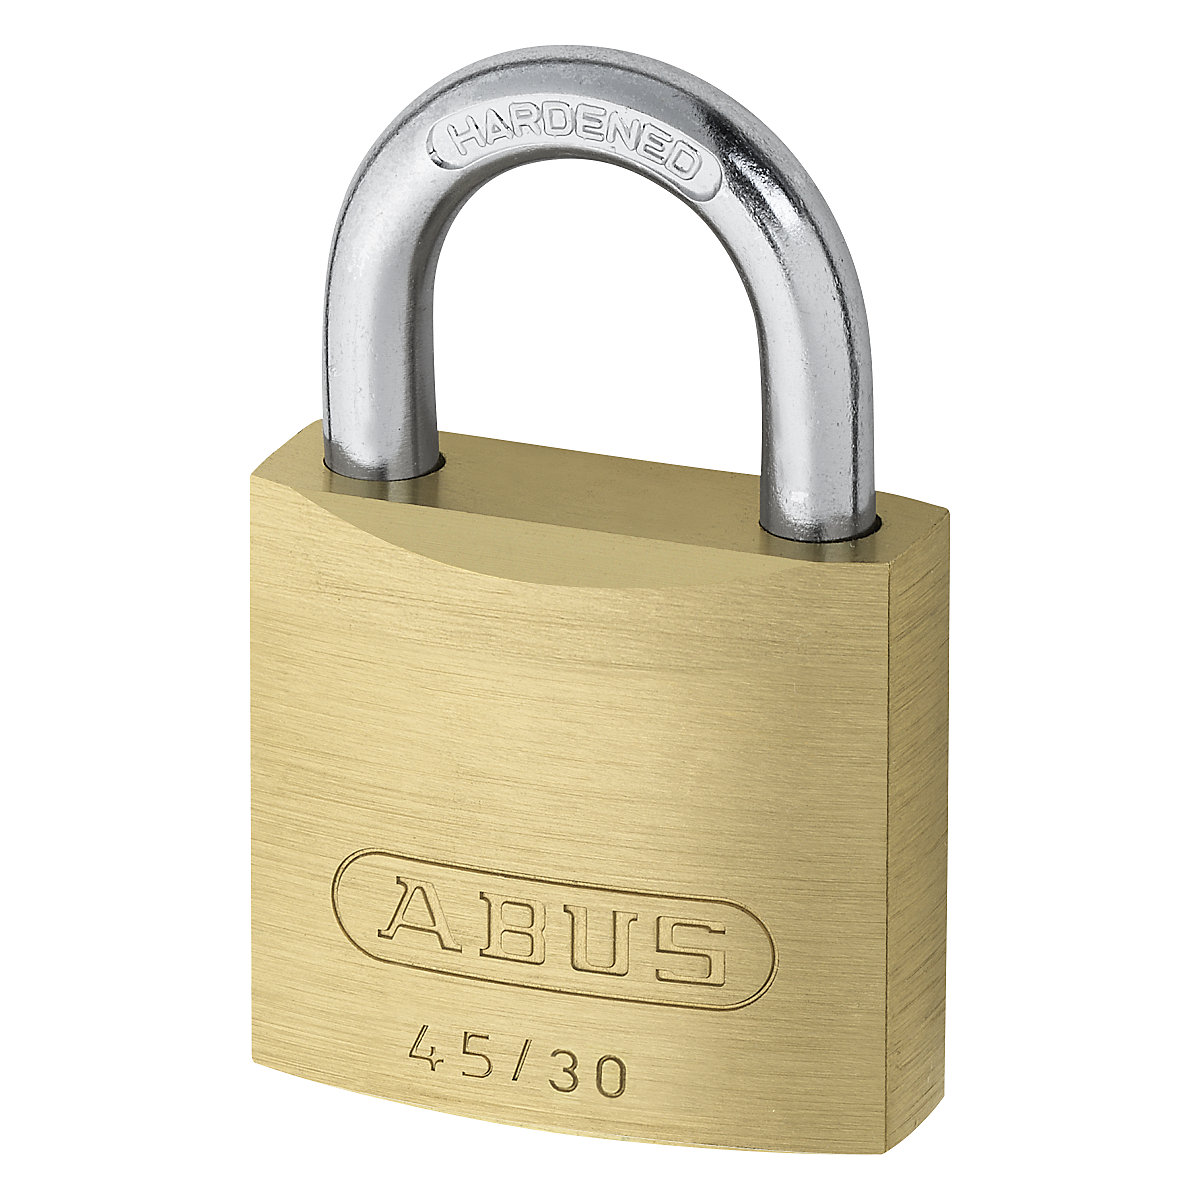 Lucchetto – ABUS: 45/30 Lock-Tag, conf. da 12 pz.